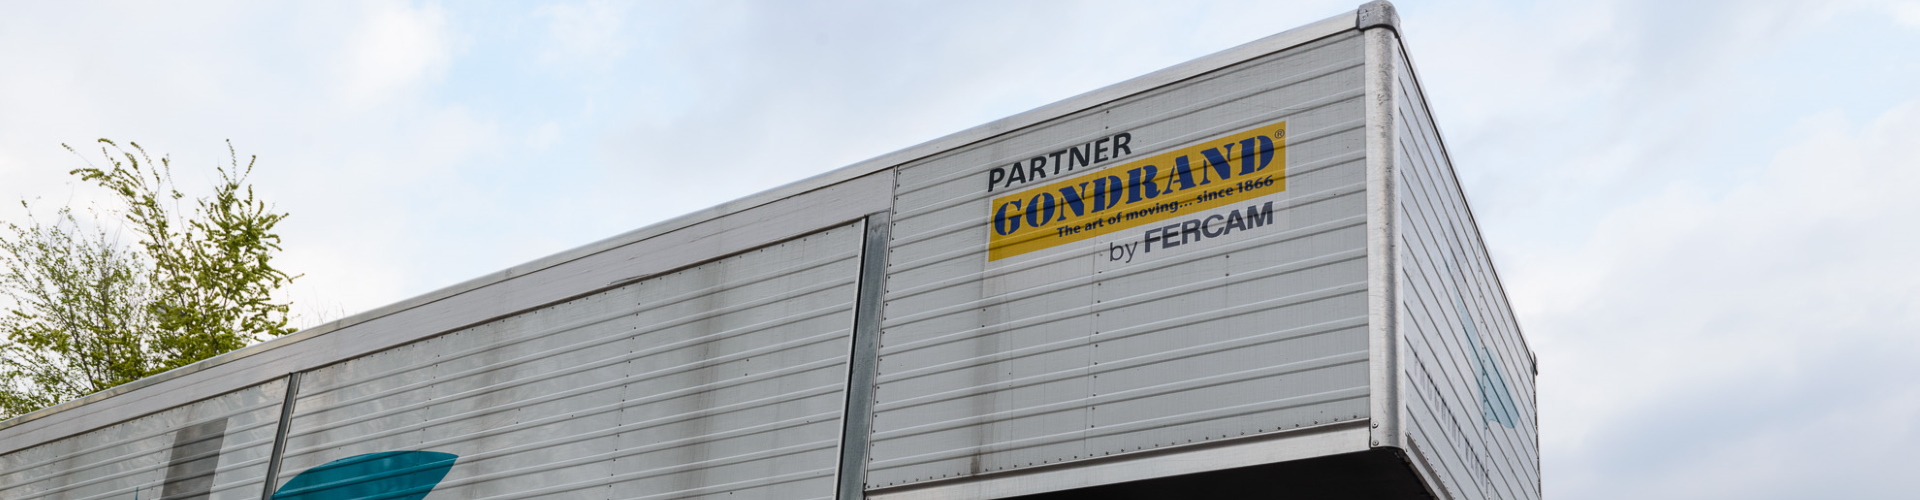 Logo von Partner Gondrand auf Facchini Verdi Trucks